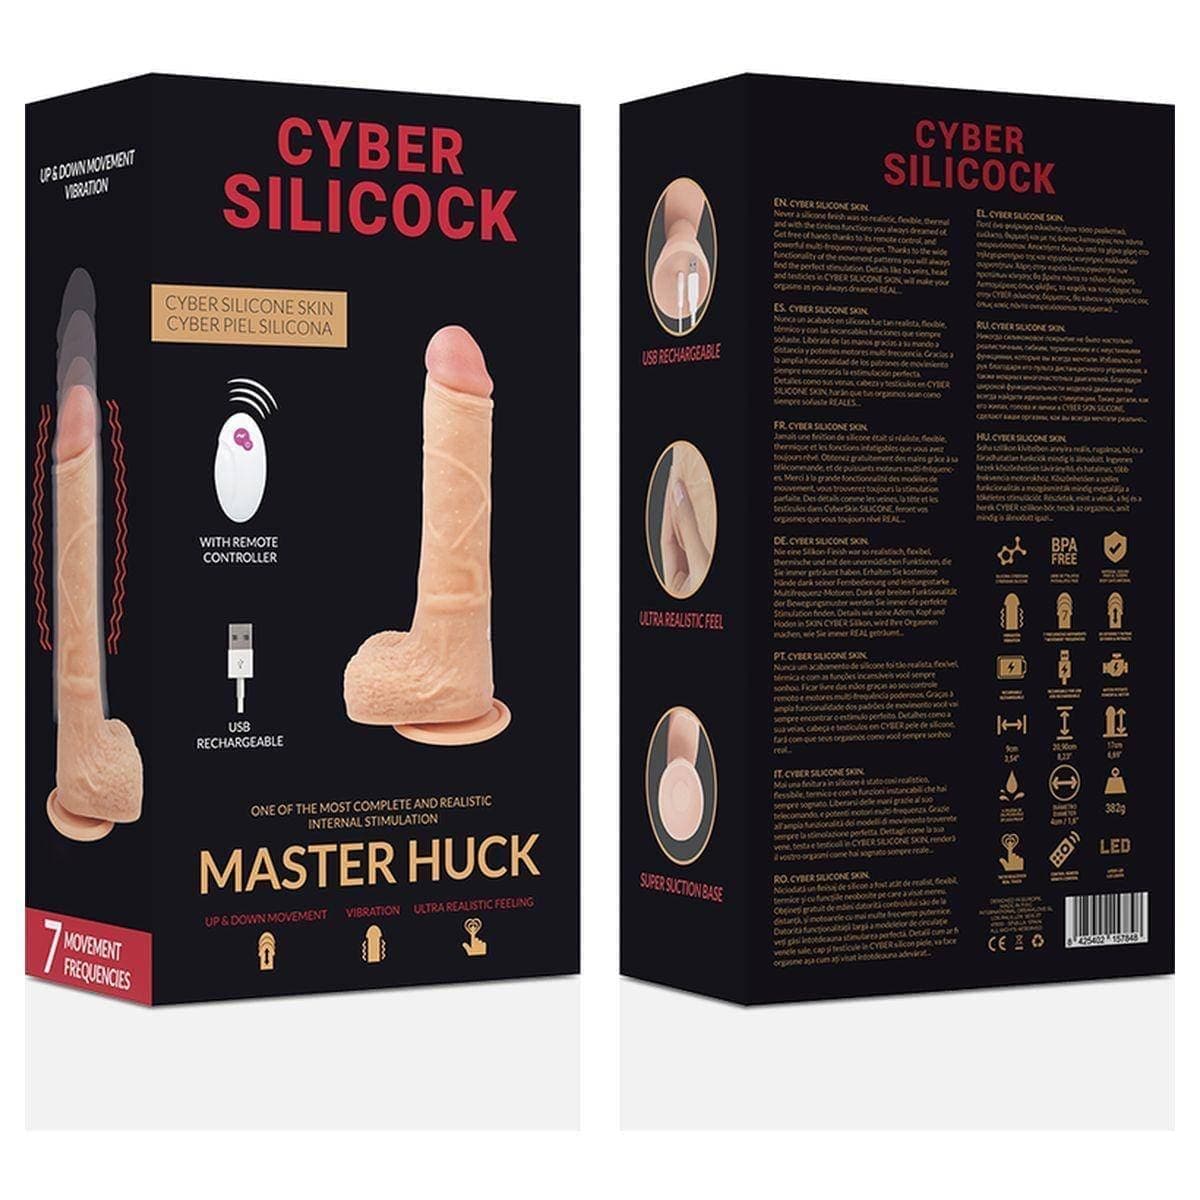 Cyber Silicock Master Huck USB Cima/Baixo com Vibração e Comando - 20,9 cm Ø4 cm  Cyber Silicock   